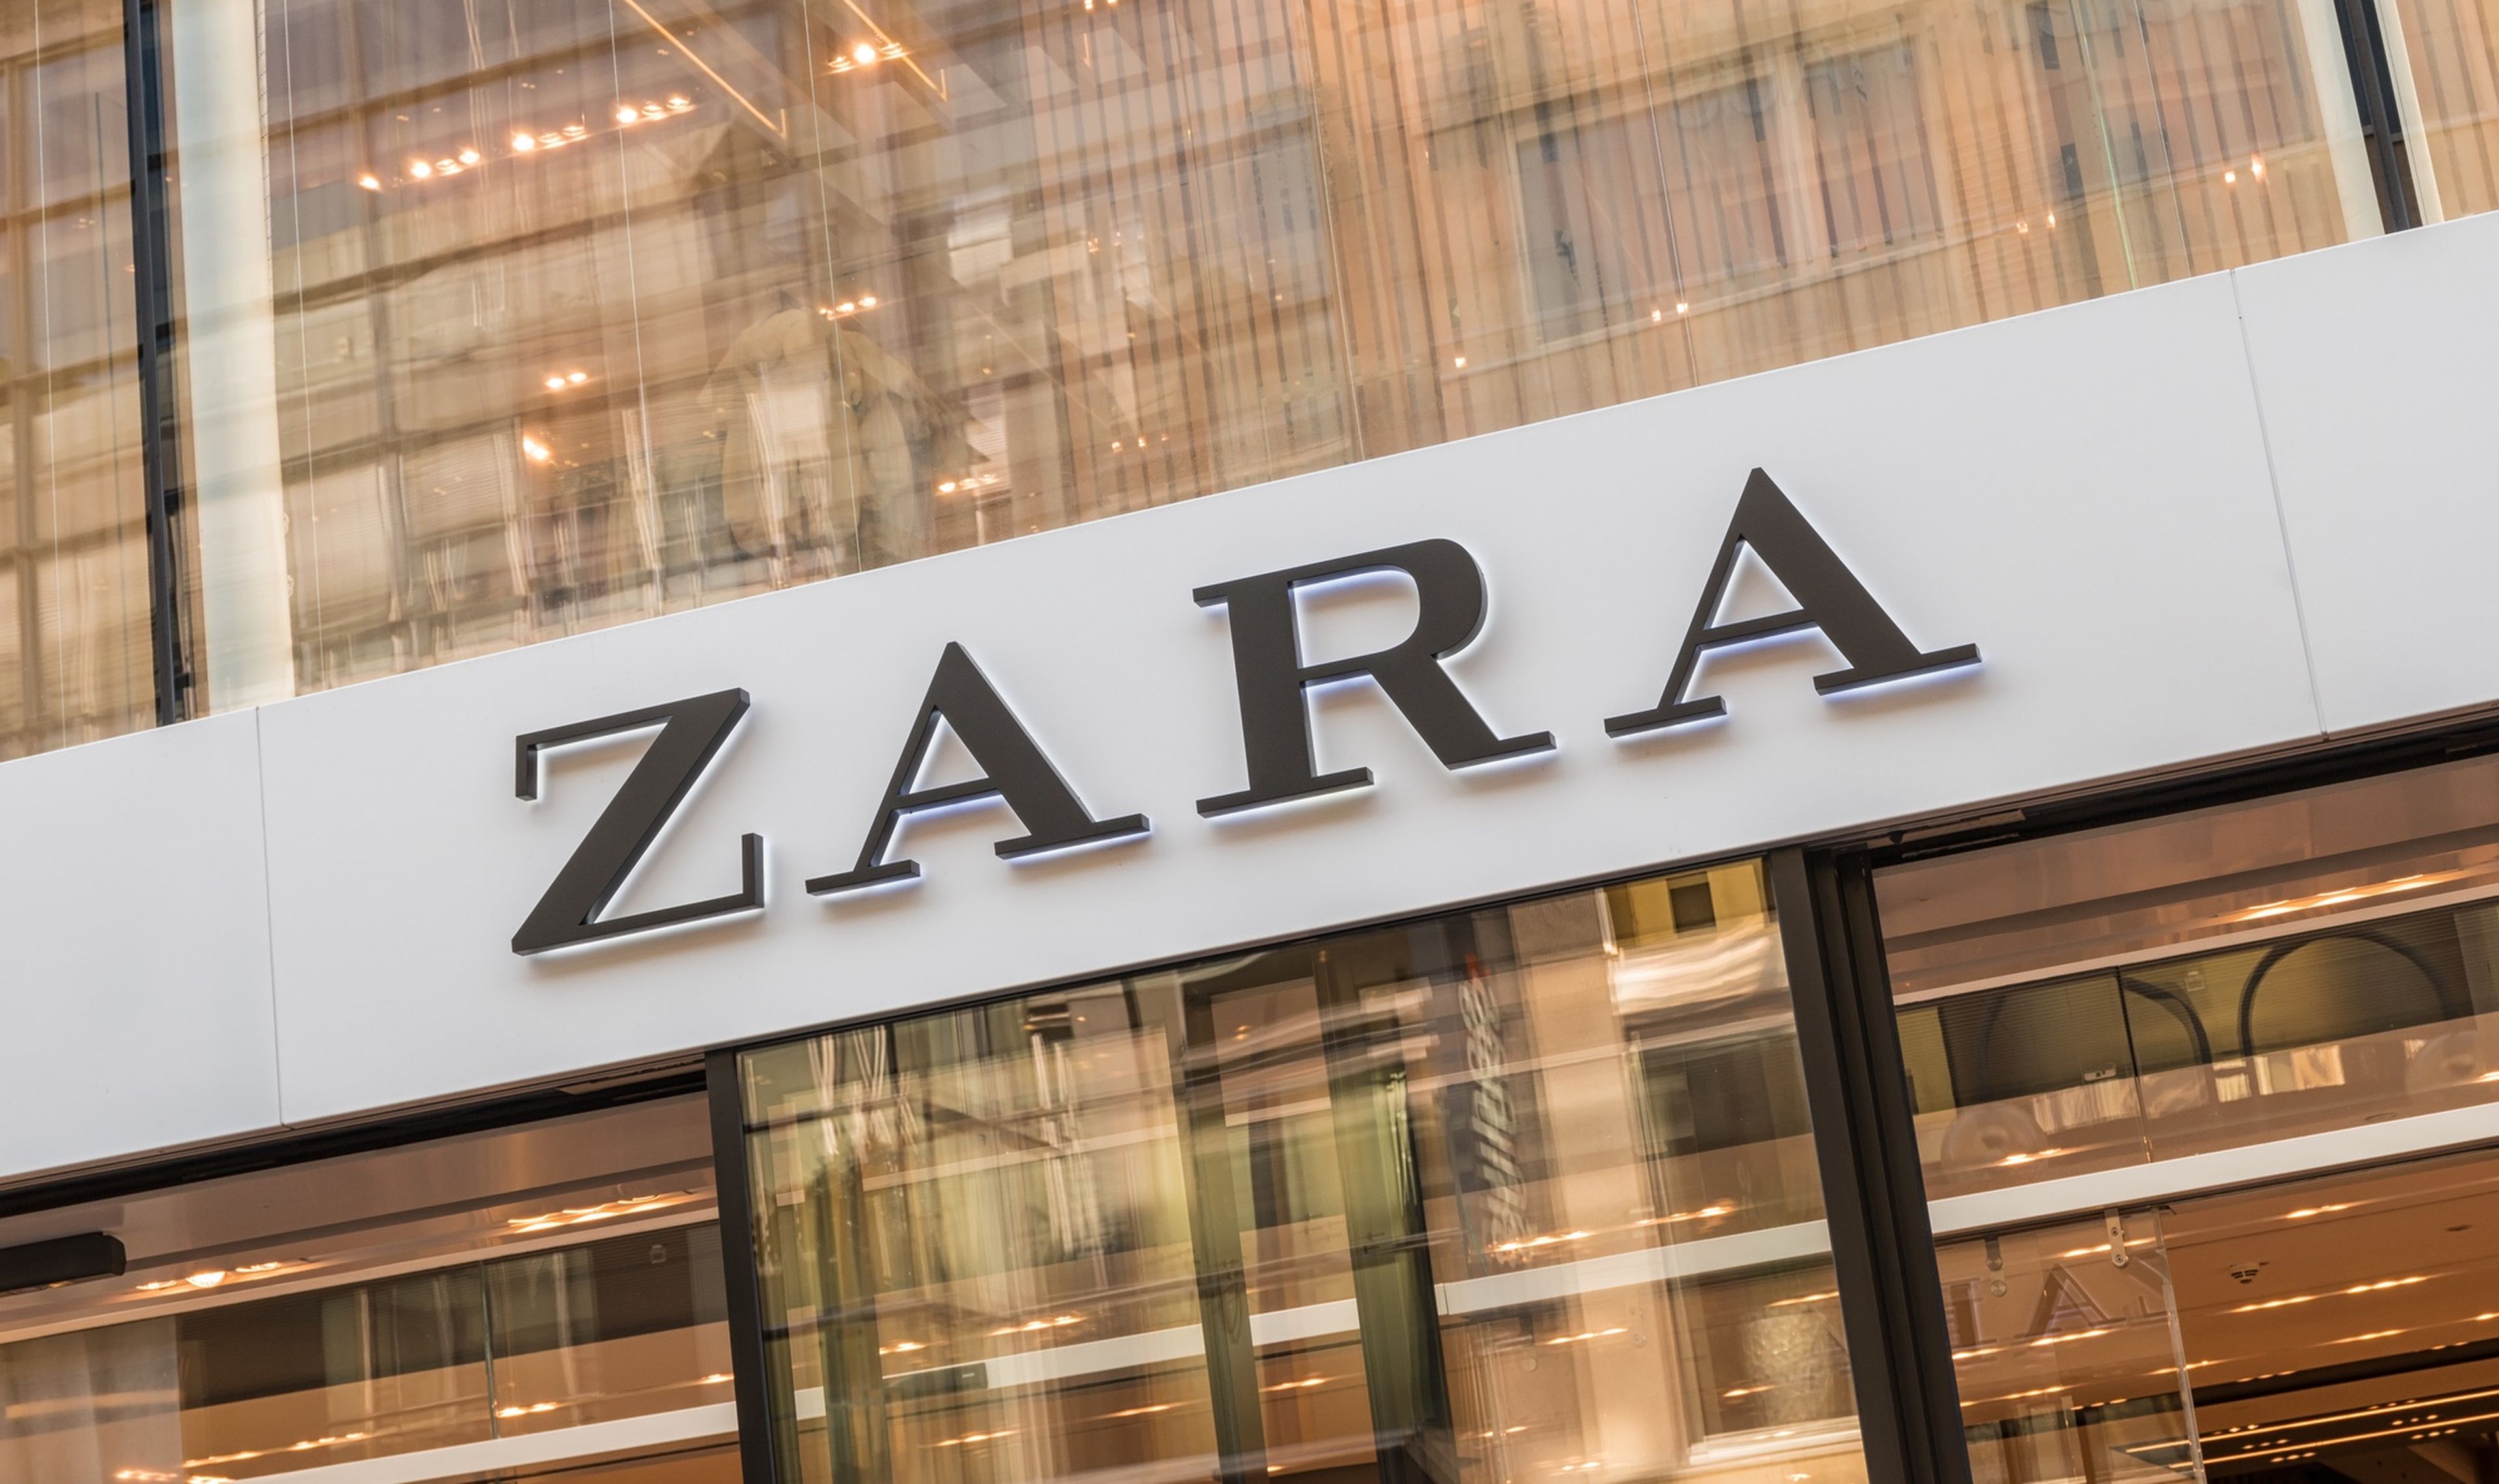 El secreto mejor guardado de Zara: el día que entra ropa nueva en sus  tiendas y en la web